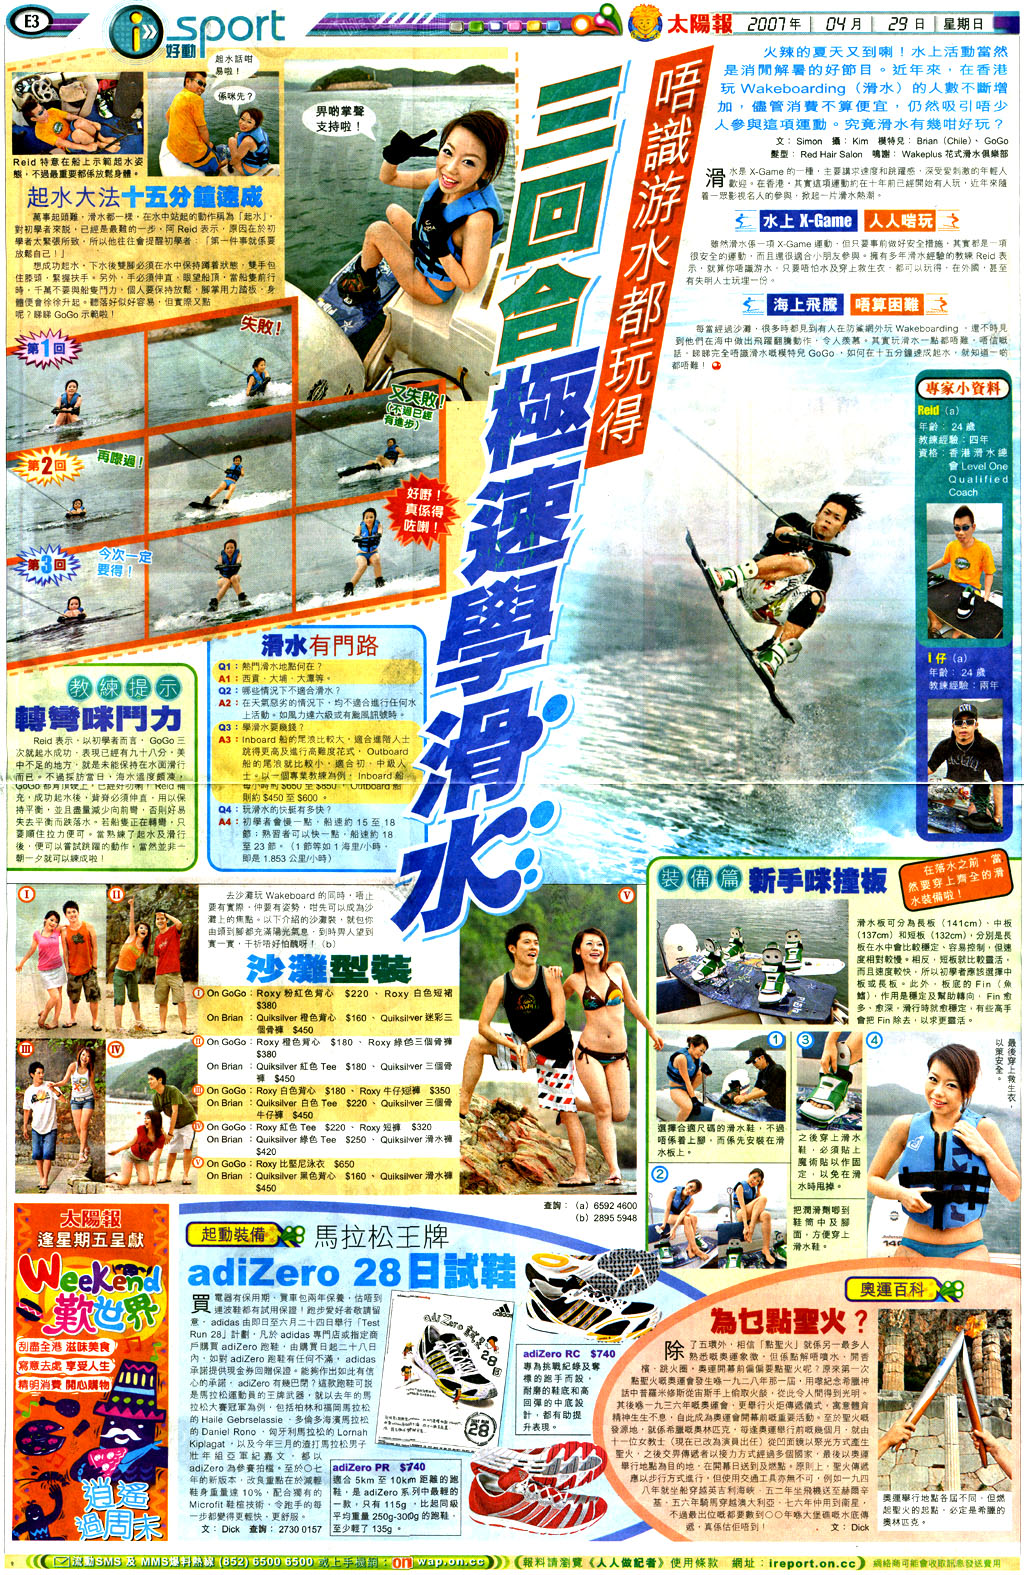 WPS WAKEBOARD HK | 香港西貢花式滑水教練 | WAKEBOARD BOAT RENTAL | 花式滑水快艇租船| SUMMER WAKEBOARD TRAINING | 暑假花式滑水課程 | www.wakeplus.com